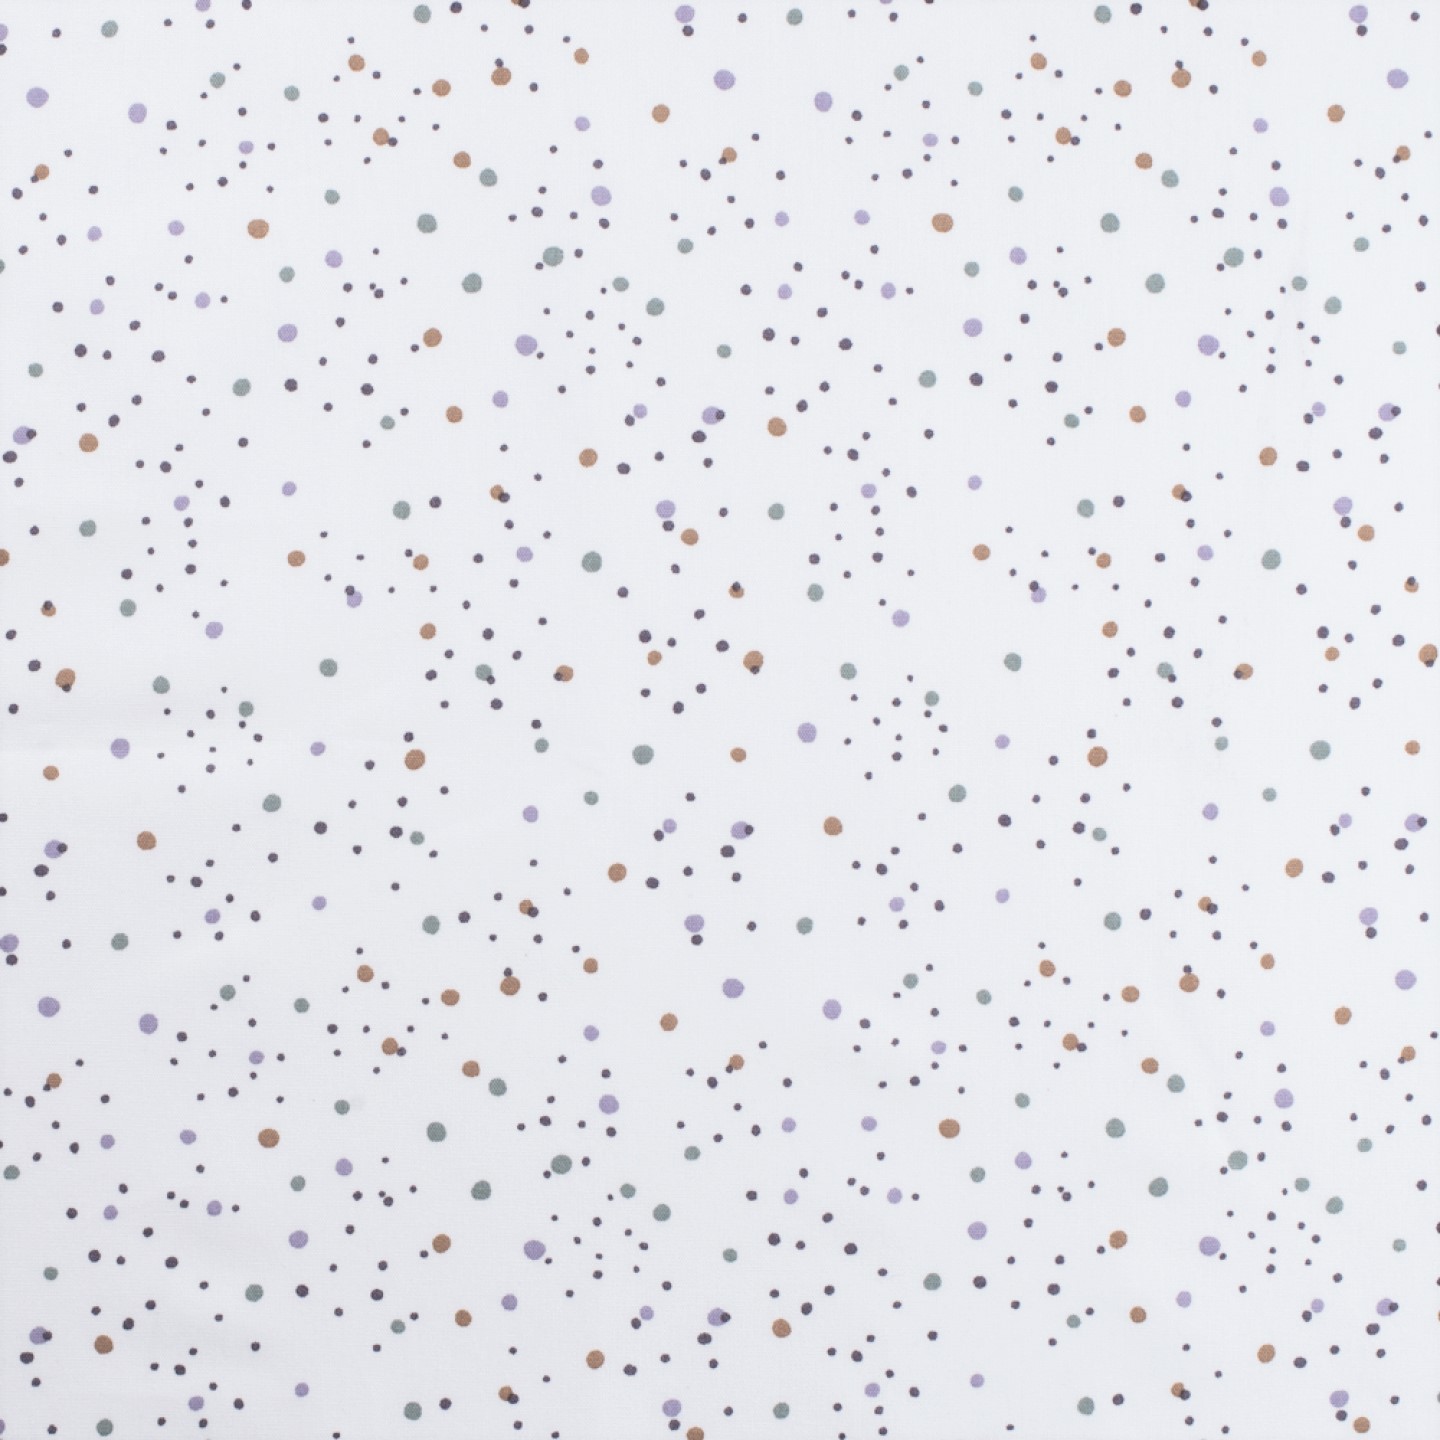 Baumwollstoff "Dots" weiß mit grau/braun/dusty green Punkten  